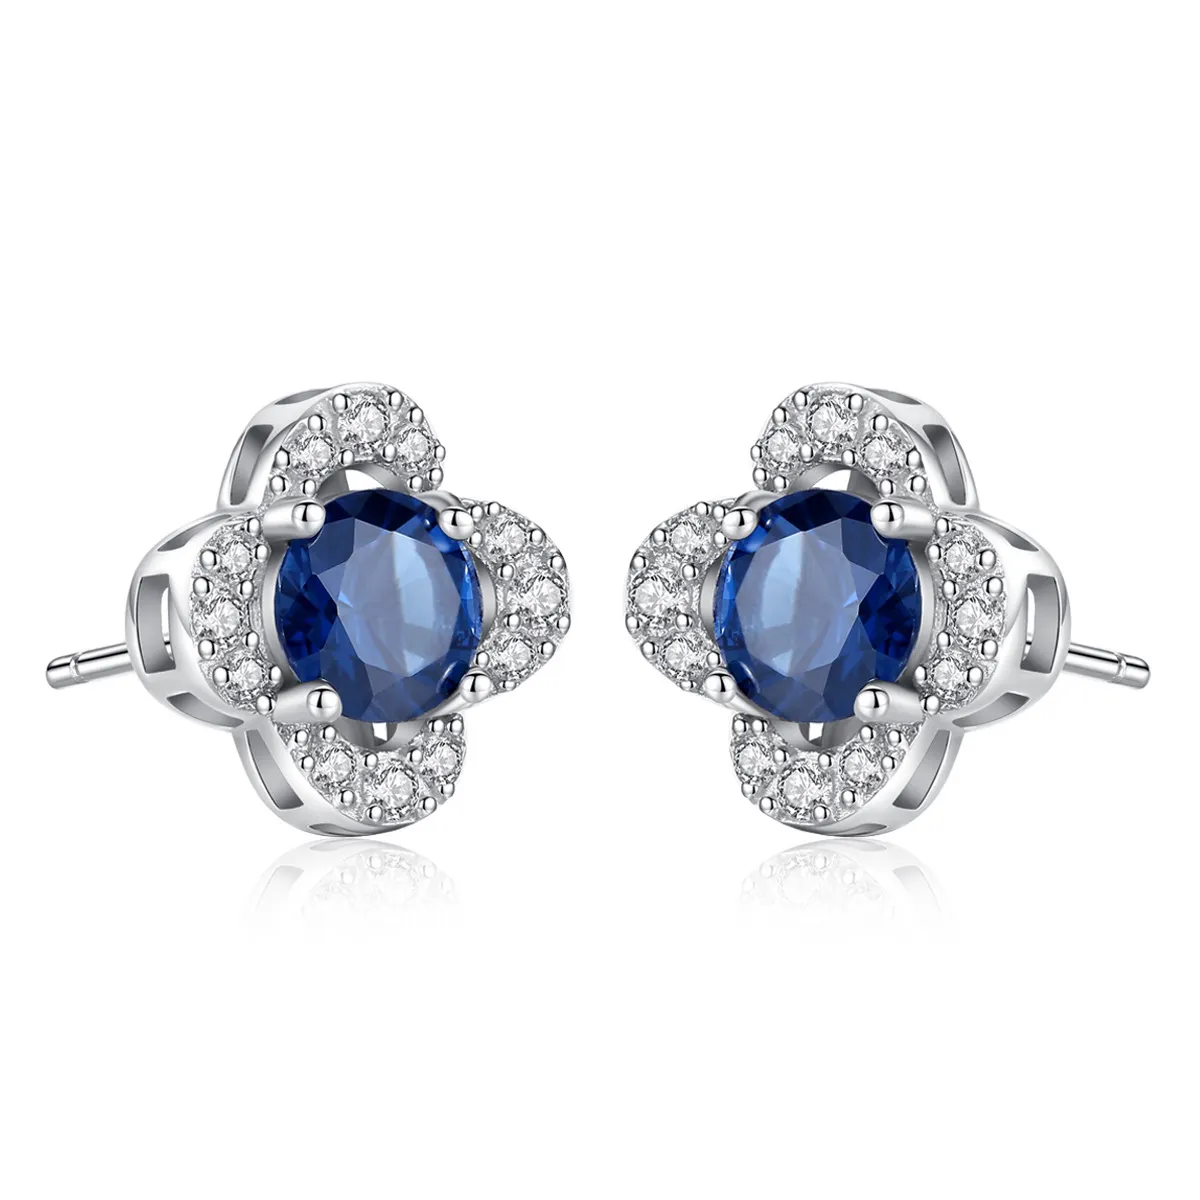 Fine Fashion 925 Silver Jewelry White Gold Blue Zircon Four Leaf Clover Flower Stud Earrings For Women